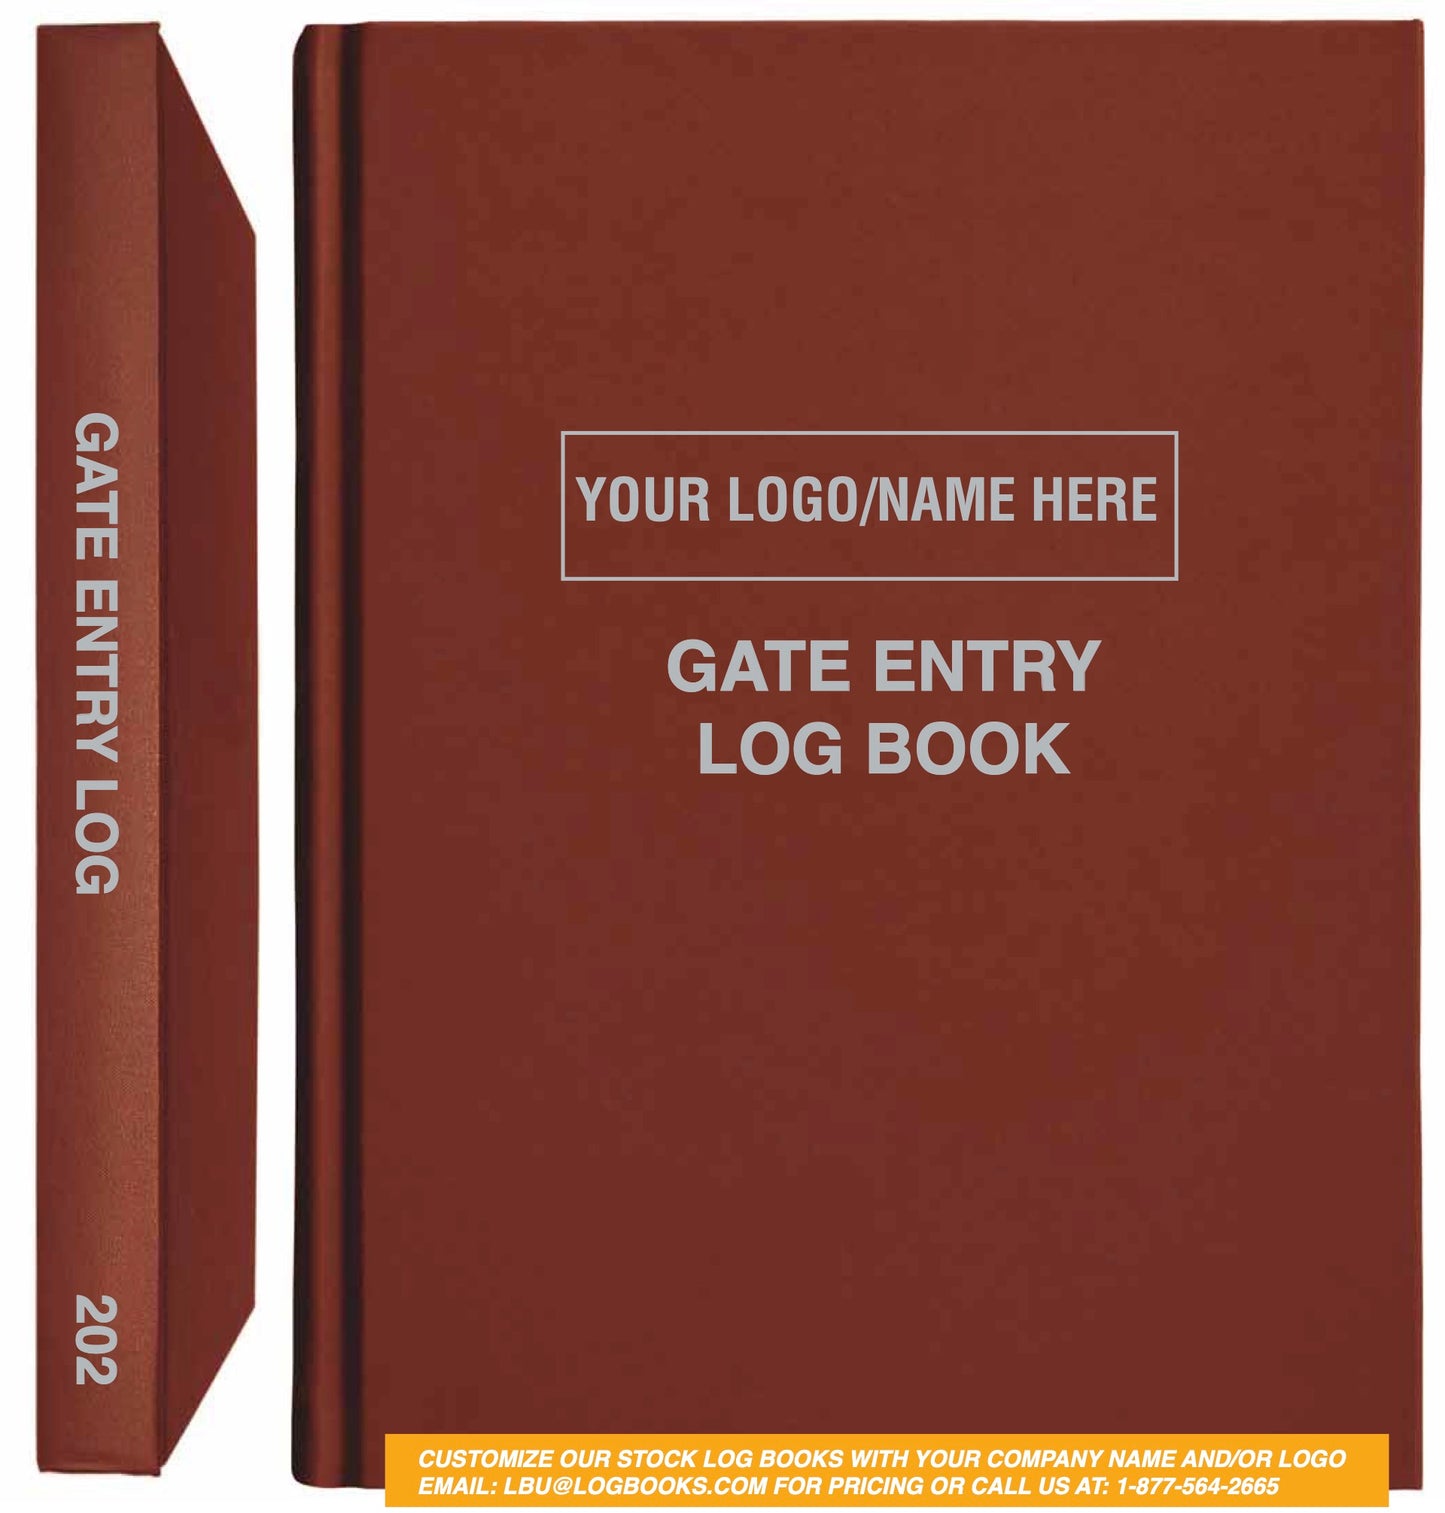 Gate Entry Log Book #202